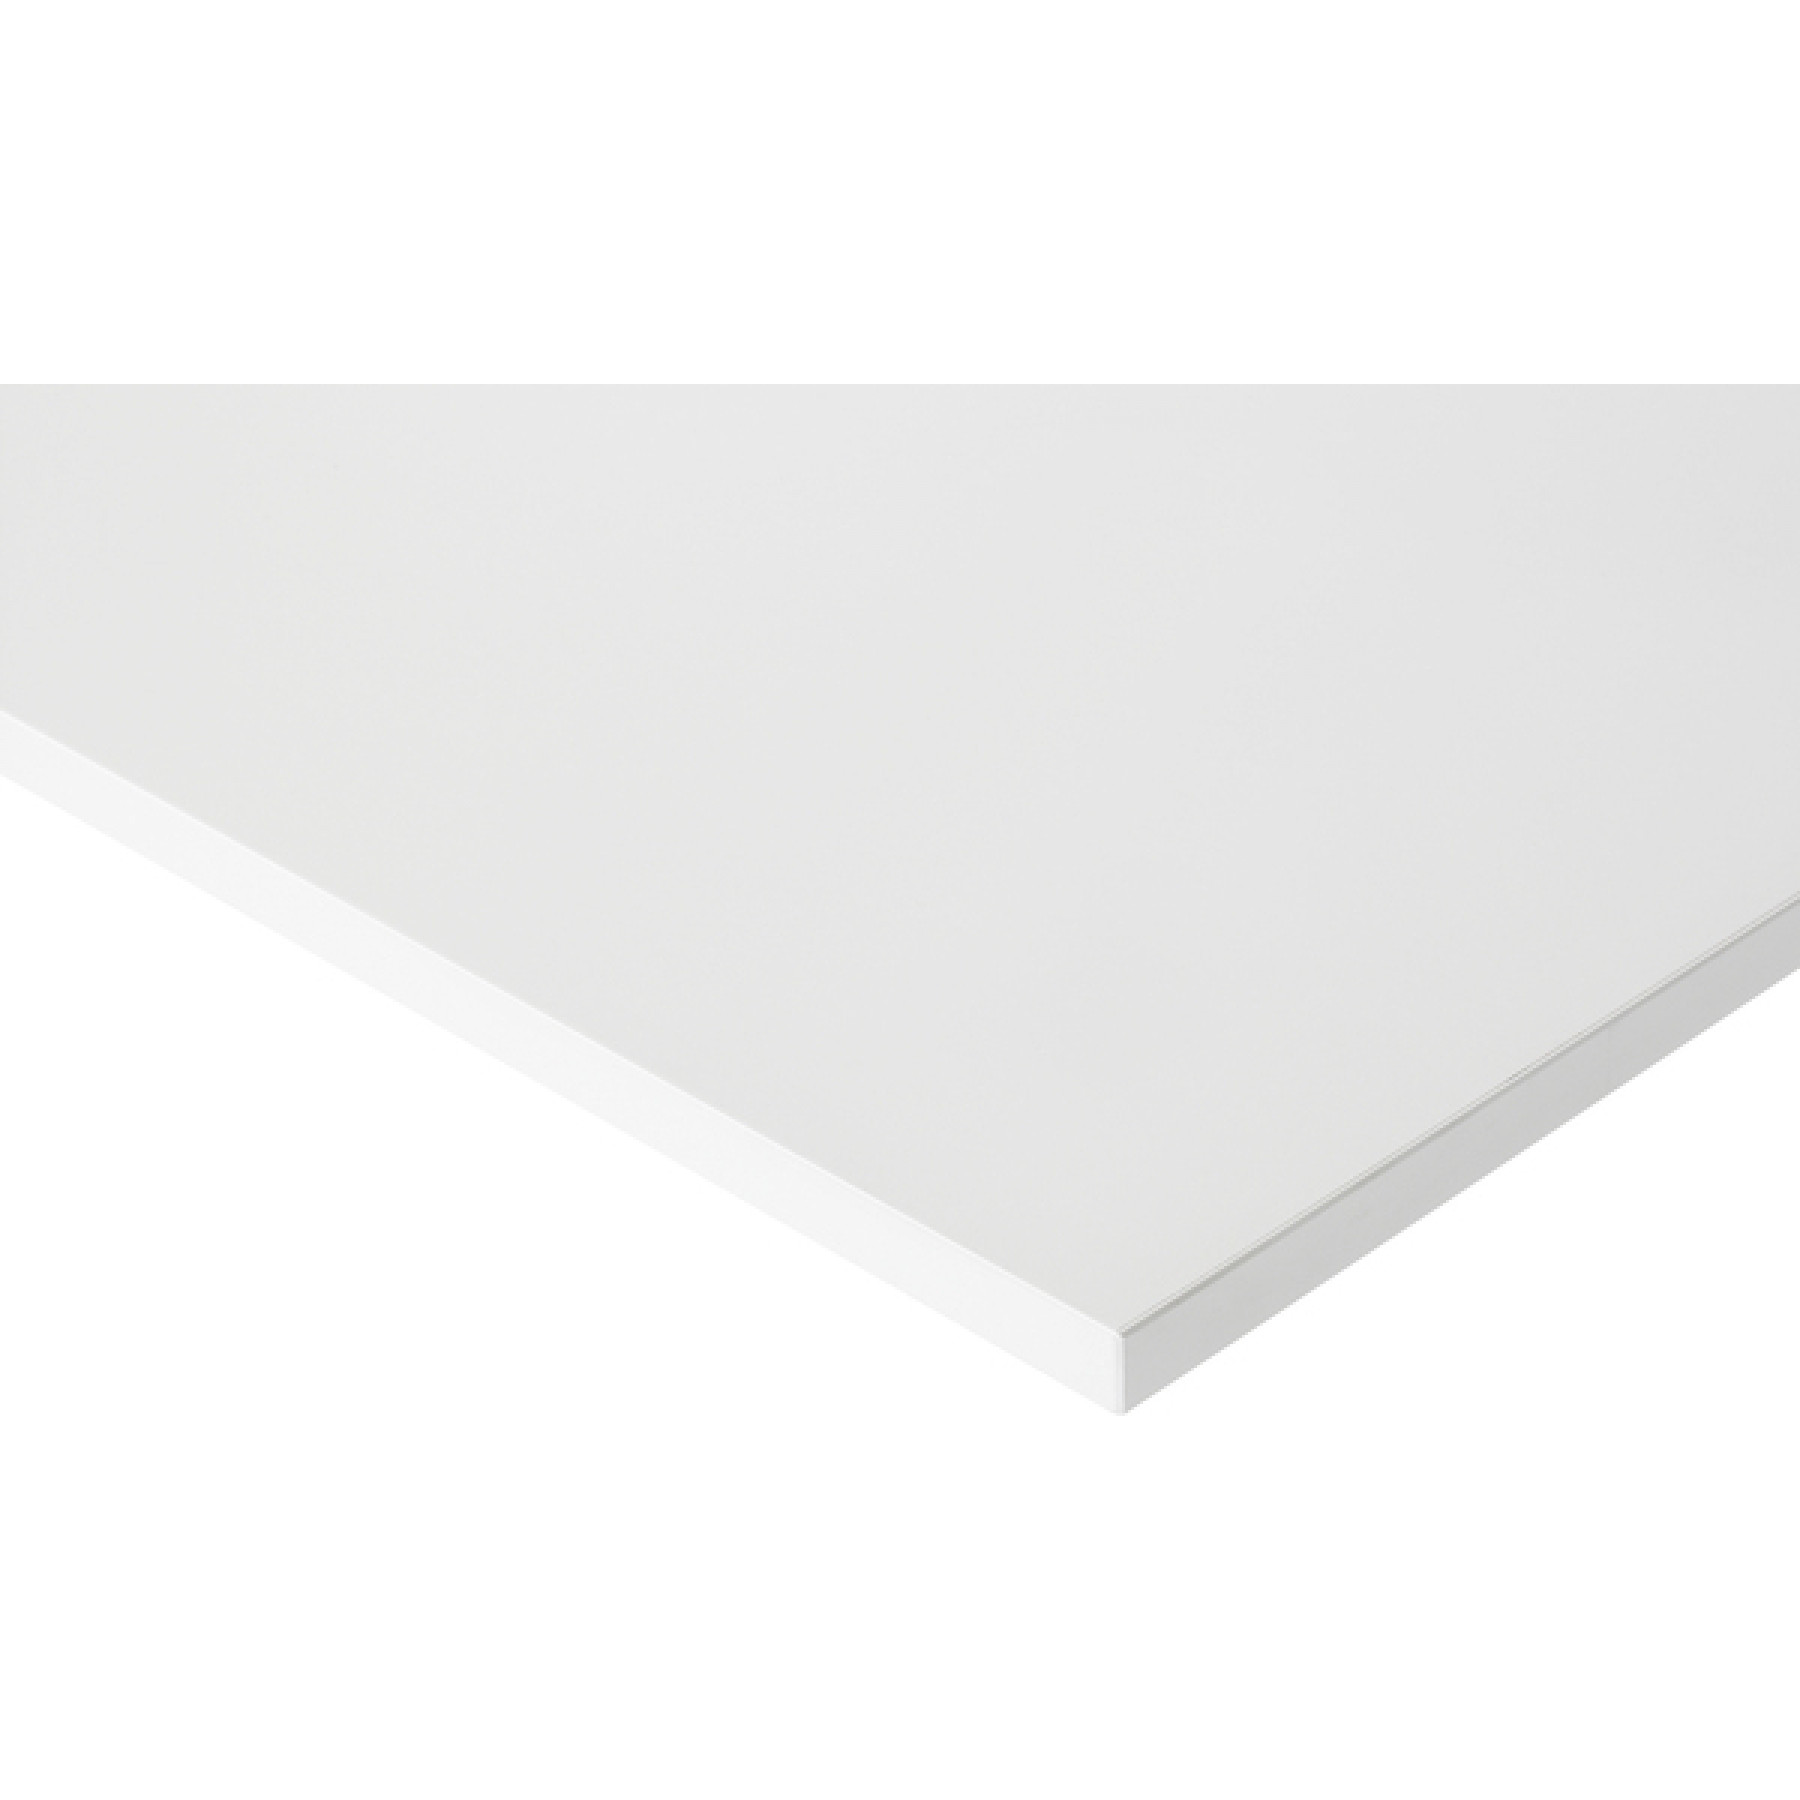 Werktafel met werkblad met EGB-melaminehars coating, serie 900